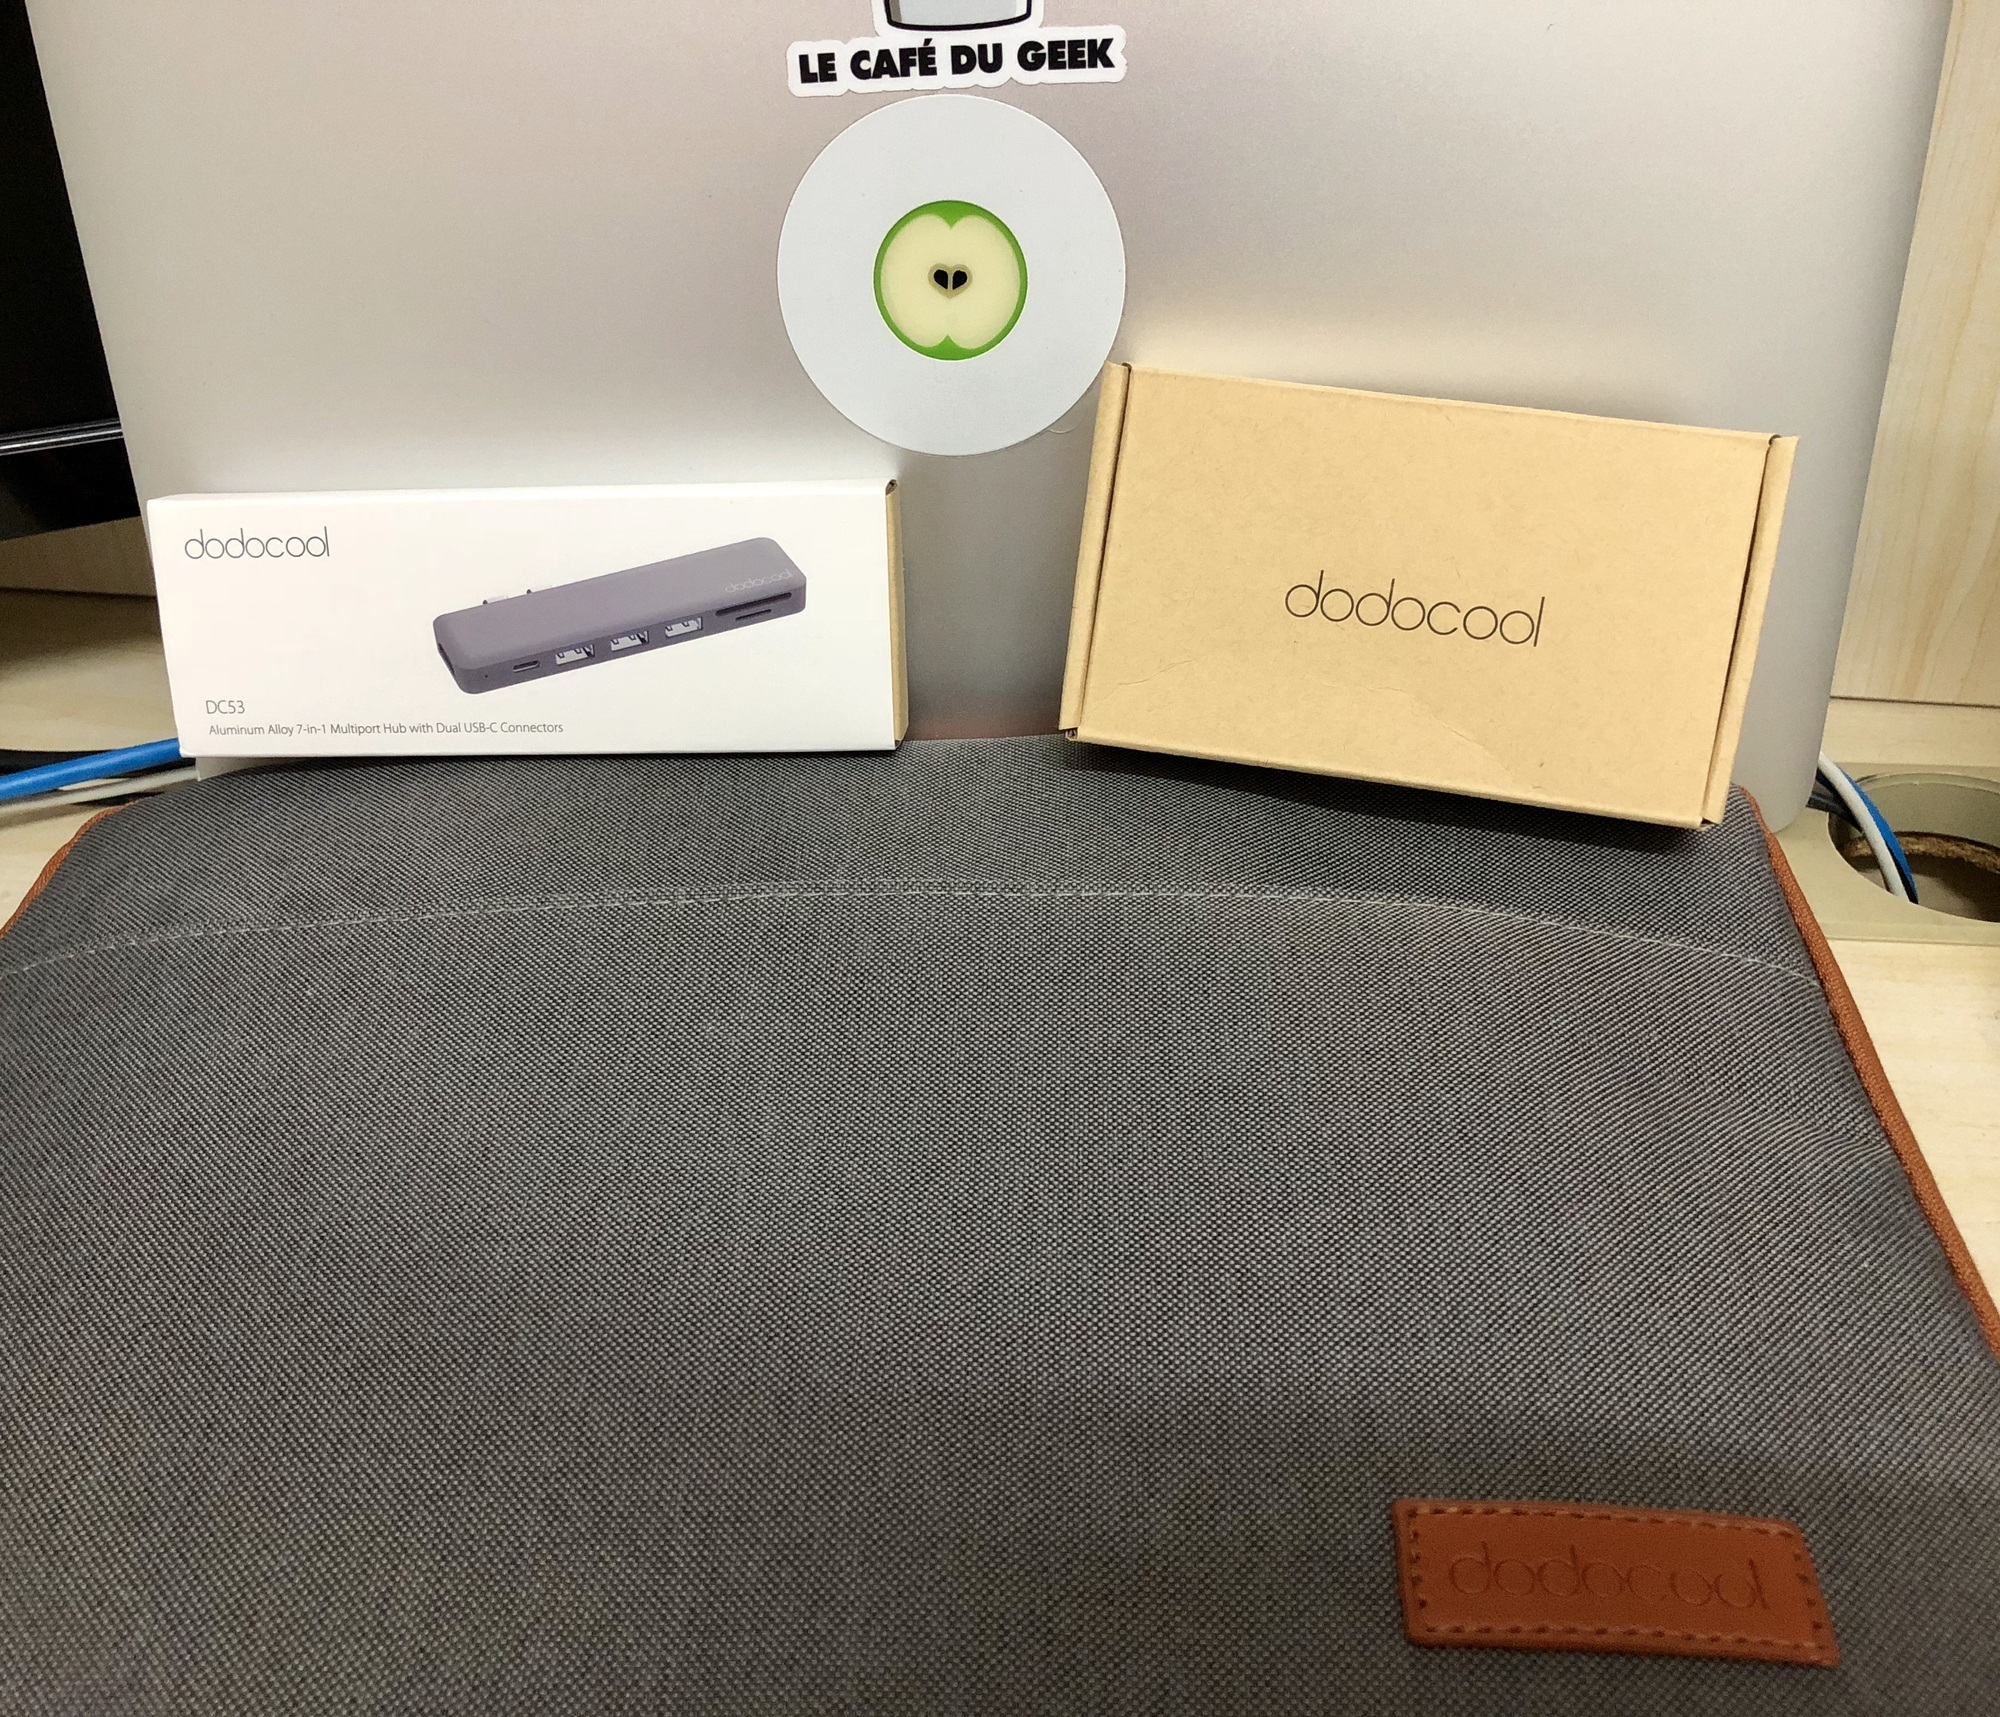 Dodocool IMG 6427 Utilisateur MacBook Pro : Les 3 accessoires indispensables à avoir (ft Dodocool) adaptateur